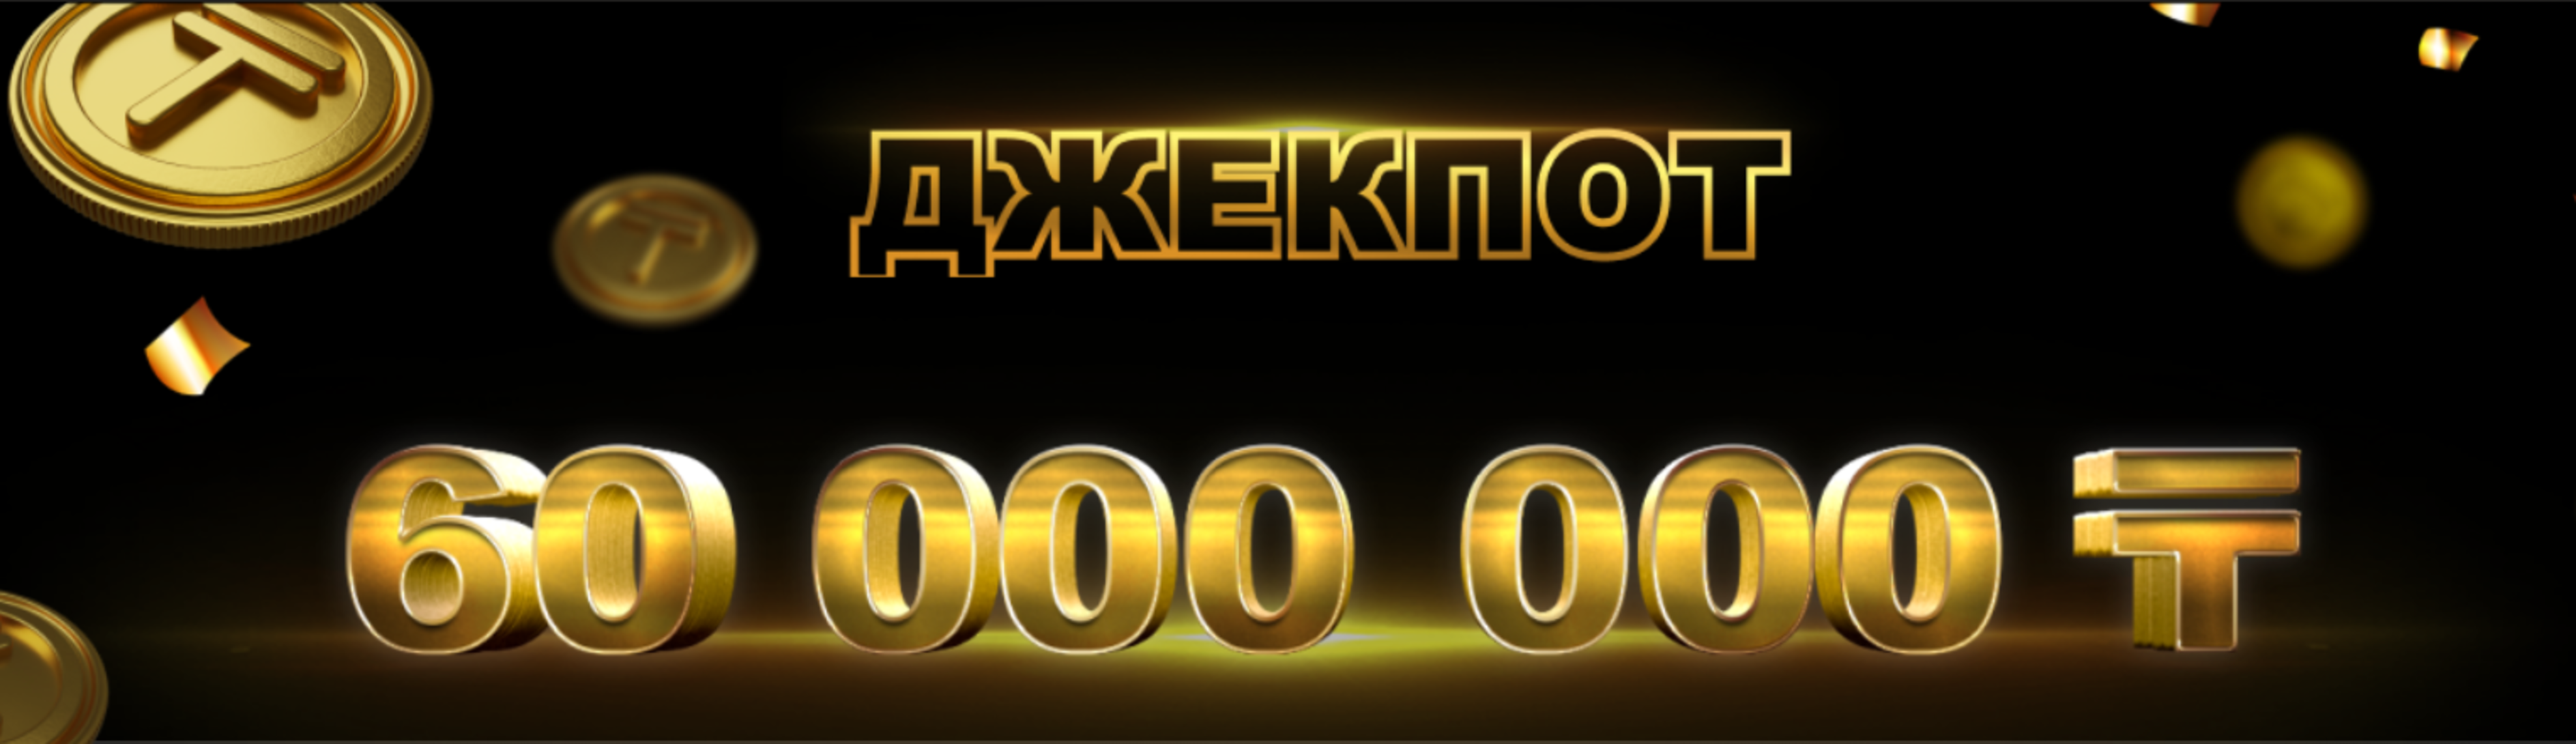 Ubet разыгрывает джекпот в 60 000 000 тенге